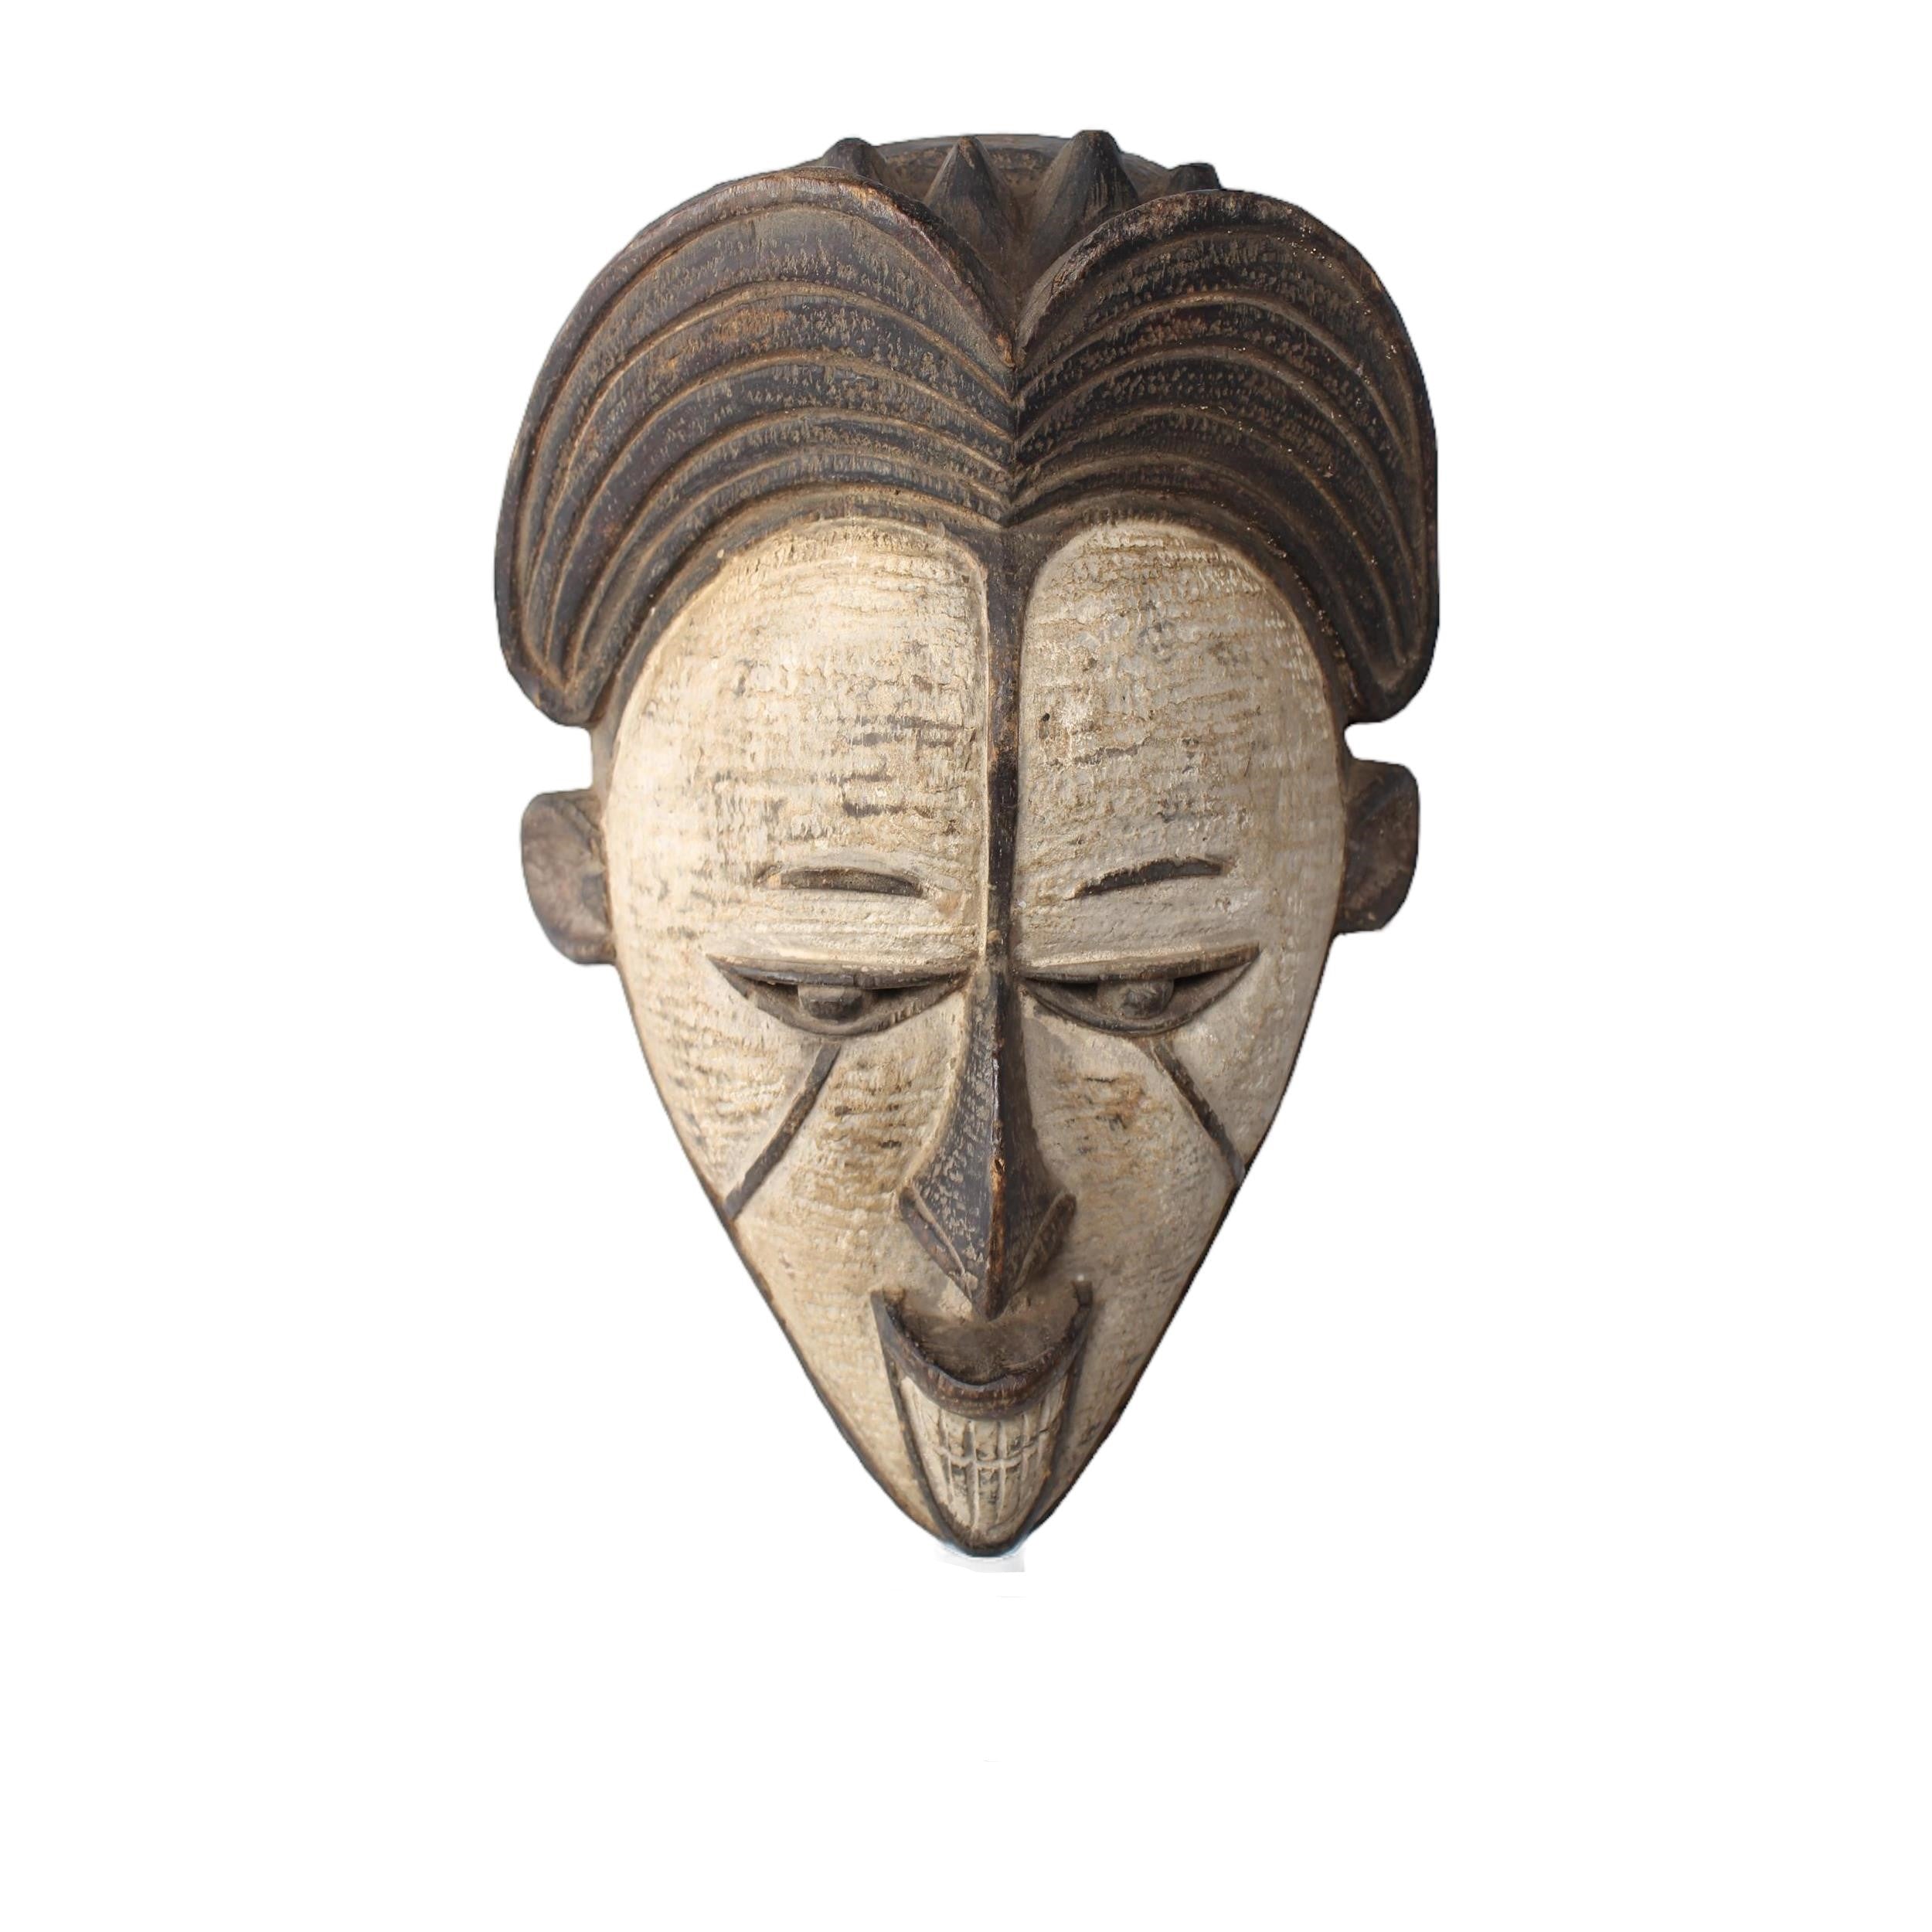 Igbo/Ibo Tribe Mask ~13.8" Tall